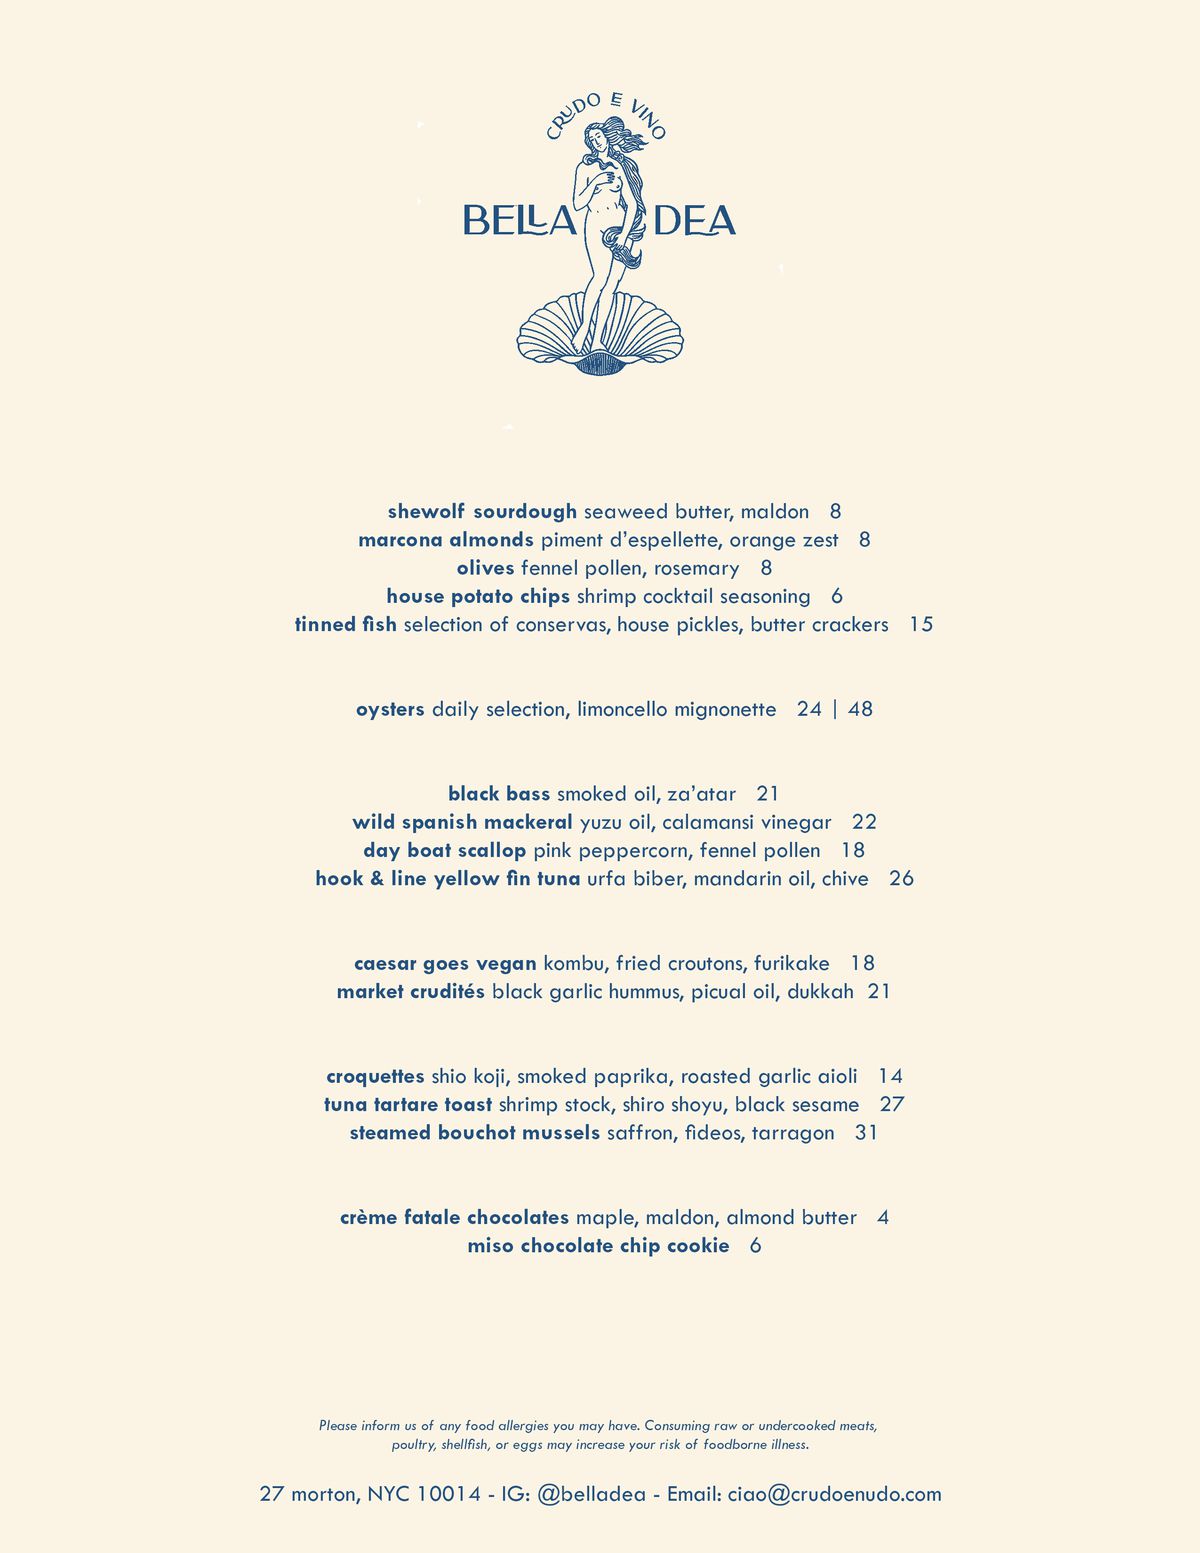 Opening menu at Bella Dea in New York City.